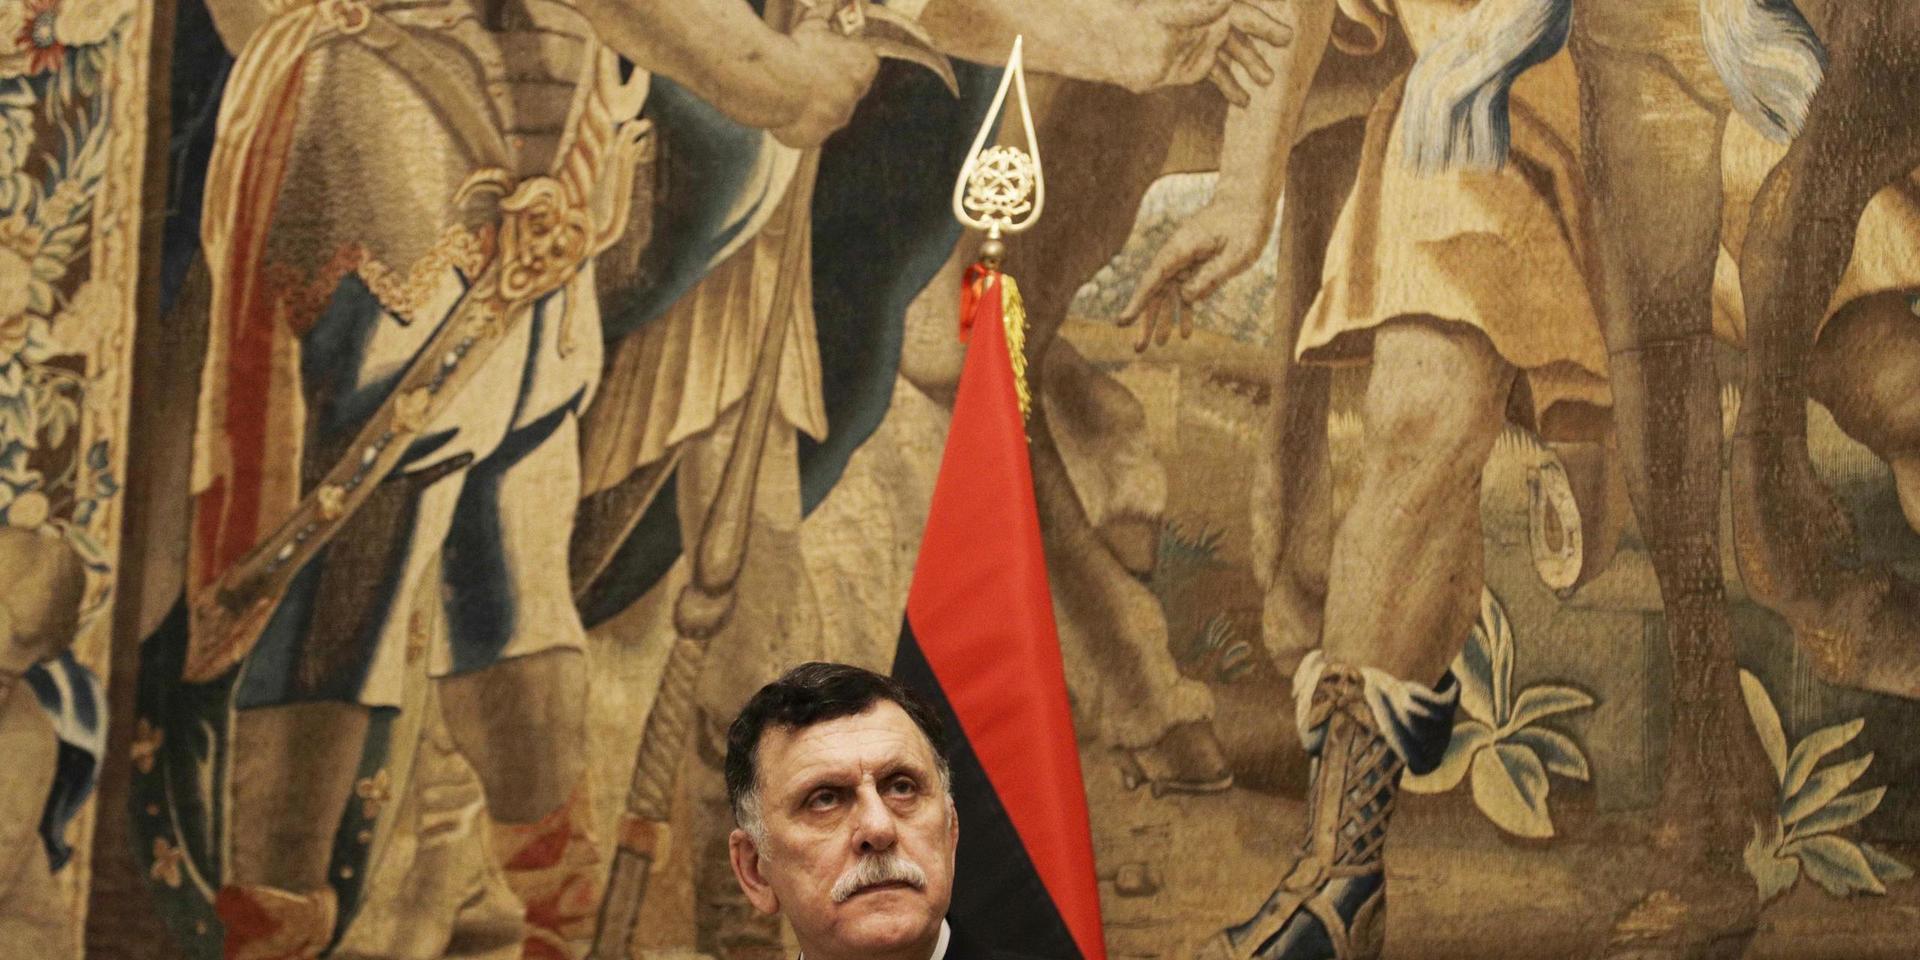 Fayez al-Sarraj, som leder Libyens FN-erkända regering (GNA), vill avgå. Arkivbild.